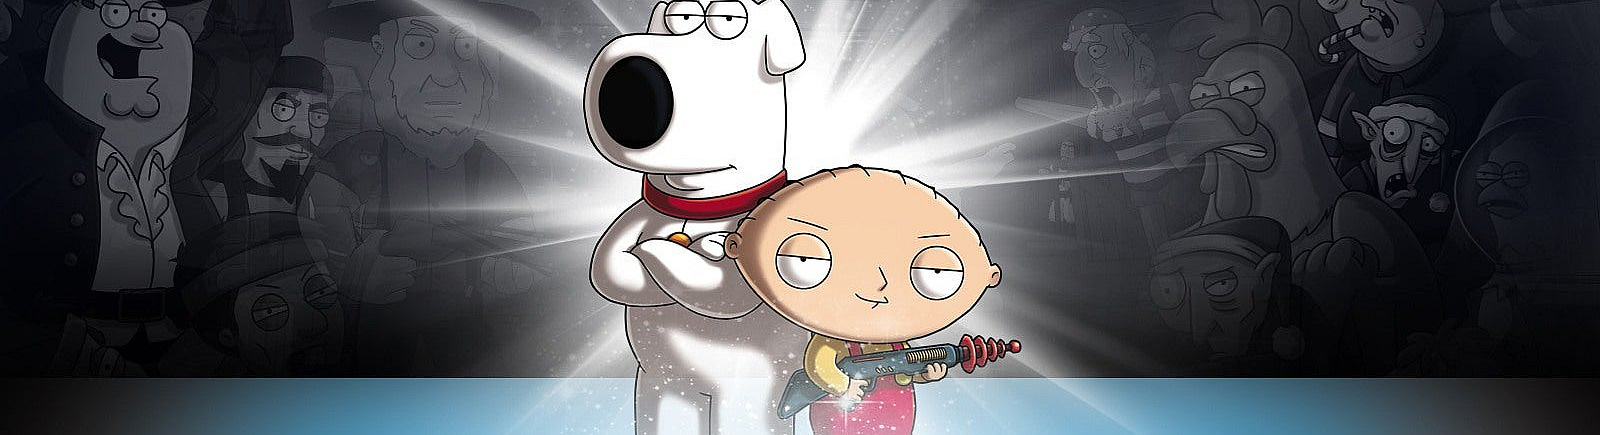 Дата выхода Family Guy: Back to the Multiverse  на PC, PS3 и Xbox 360 в России и во всем мире